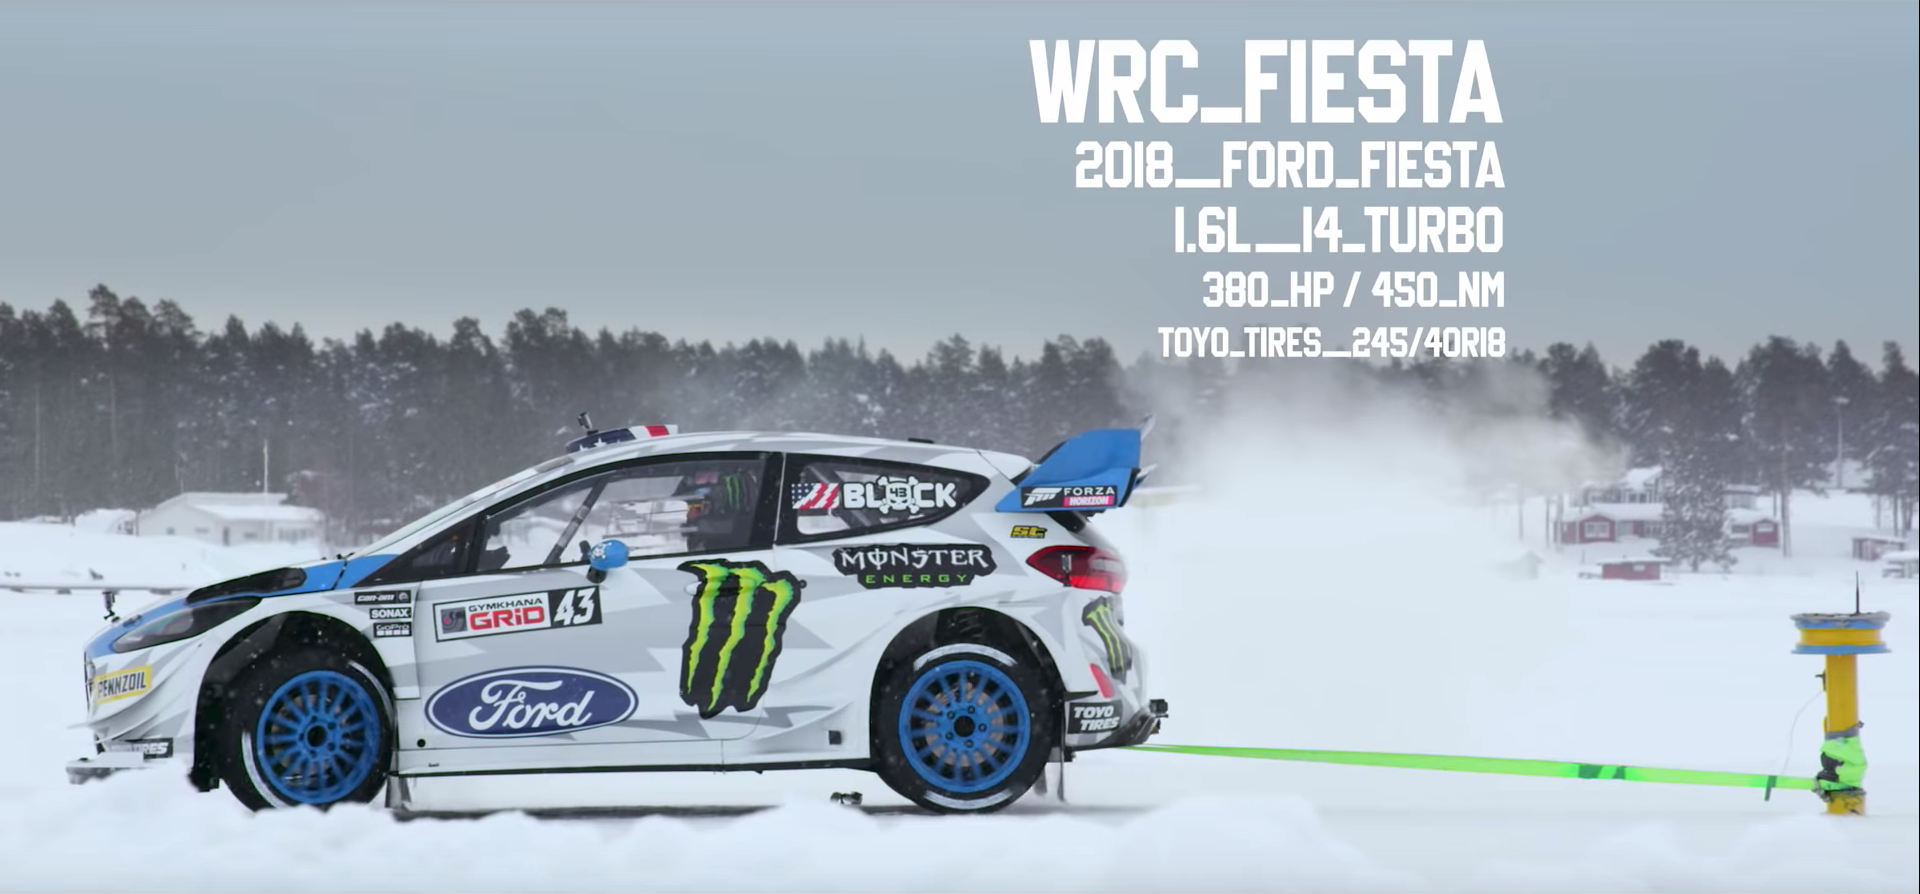 Ford Fiesta WRC 2018